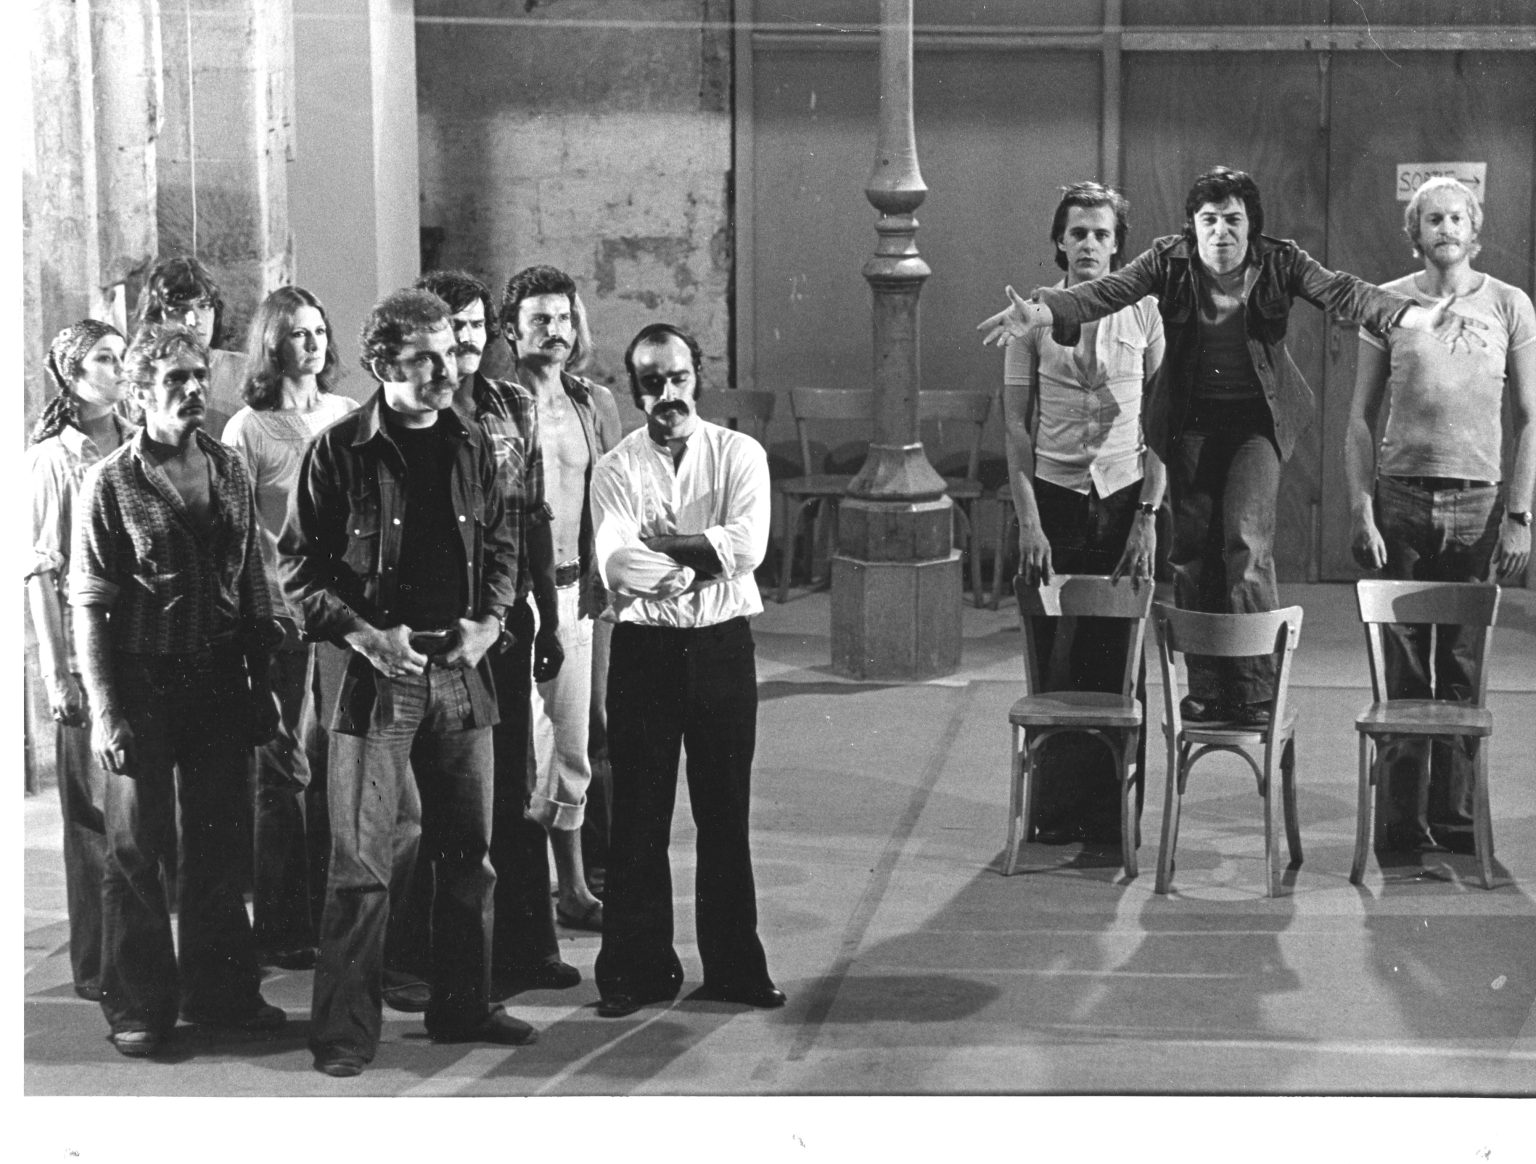 1975 - le Train du Bon Dieu - Ensemble Théâtral Mobile - avec. Janine Patrick, Michèle Fabien Jean-Luc Debatice, Gilles Lagay, Claude Koener, Nicola Donato, Philippe Sireuil et Philippe Van Kessel.